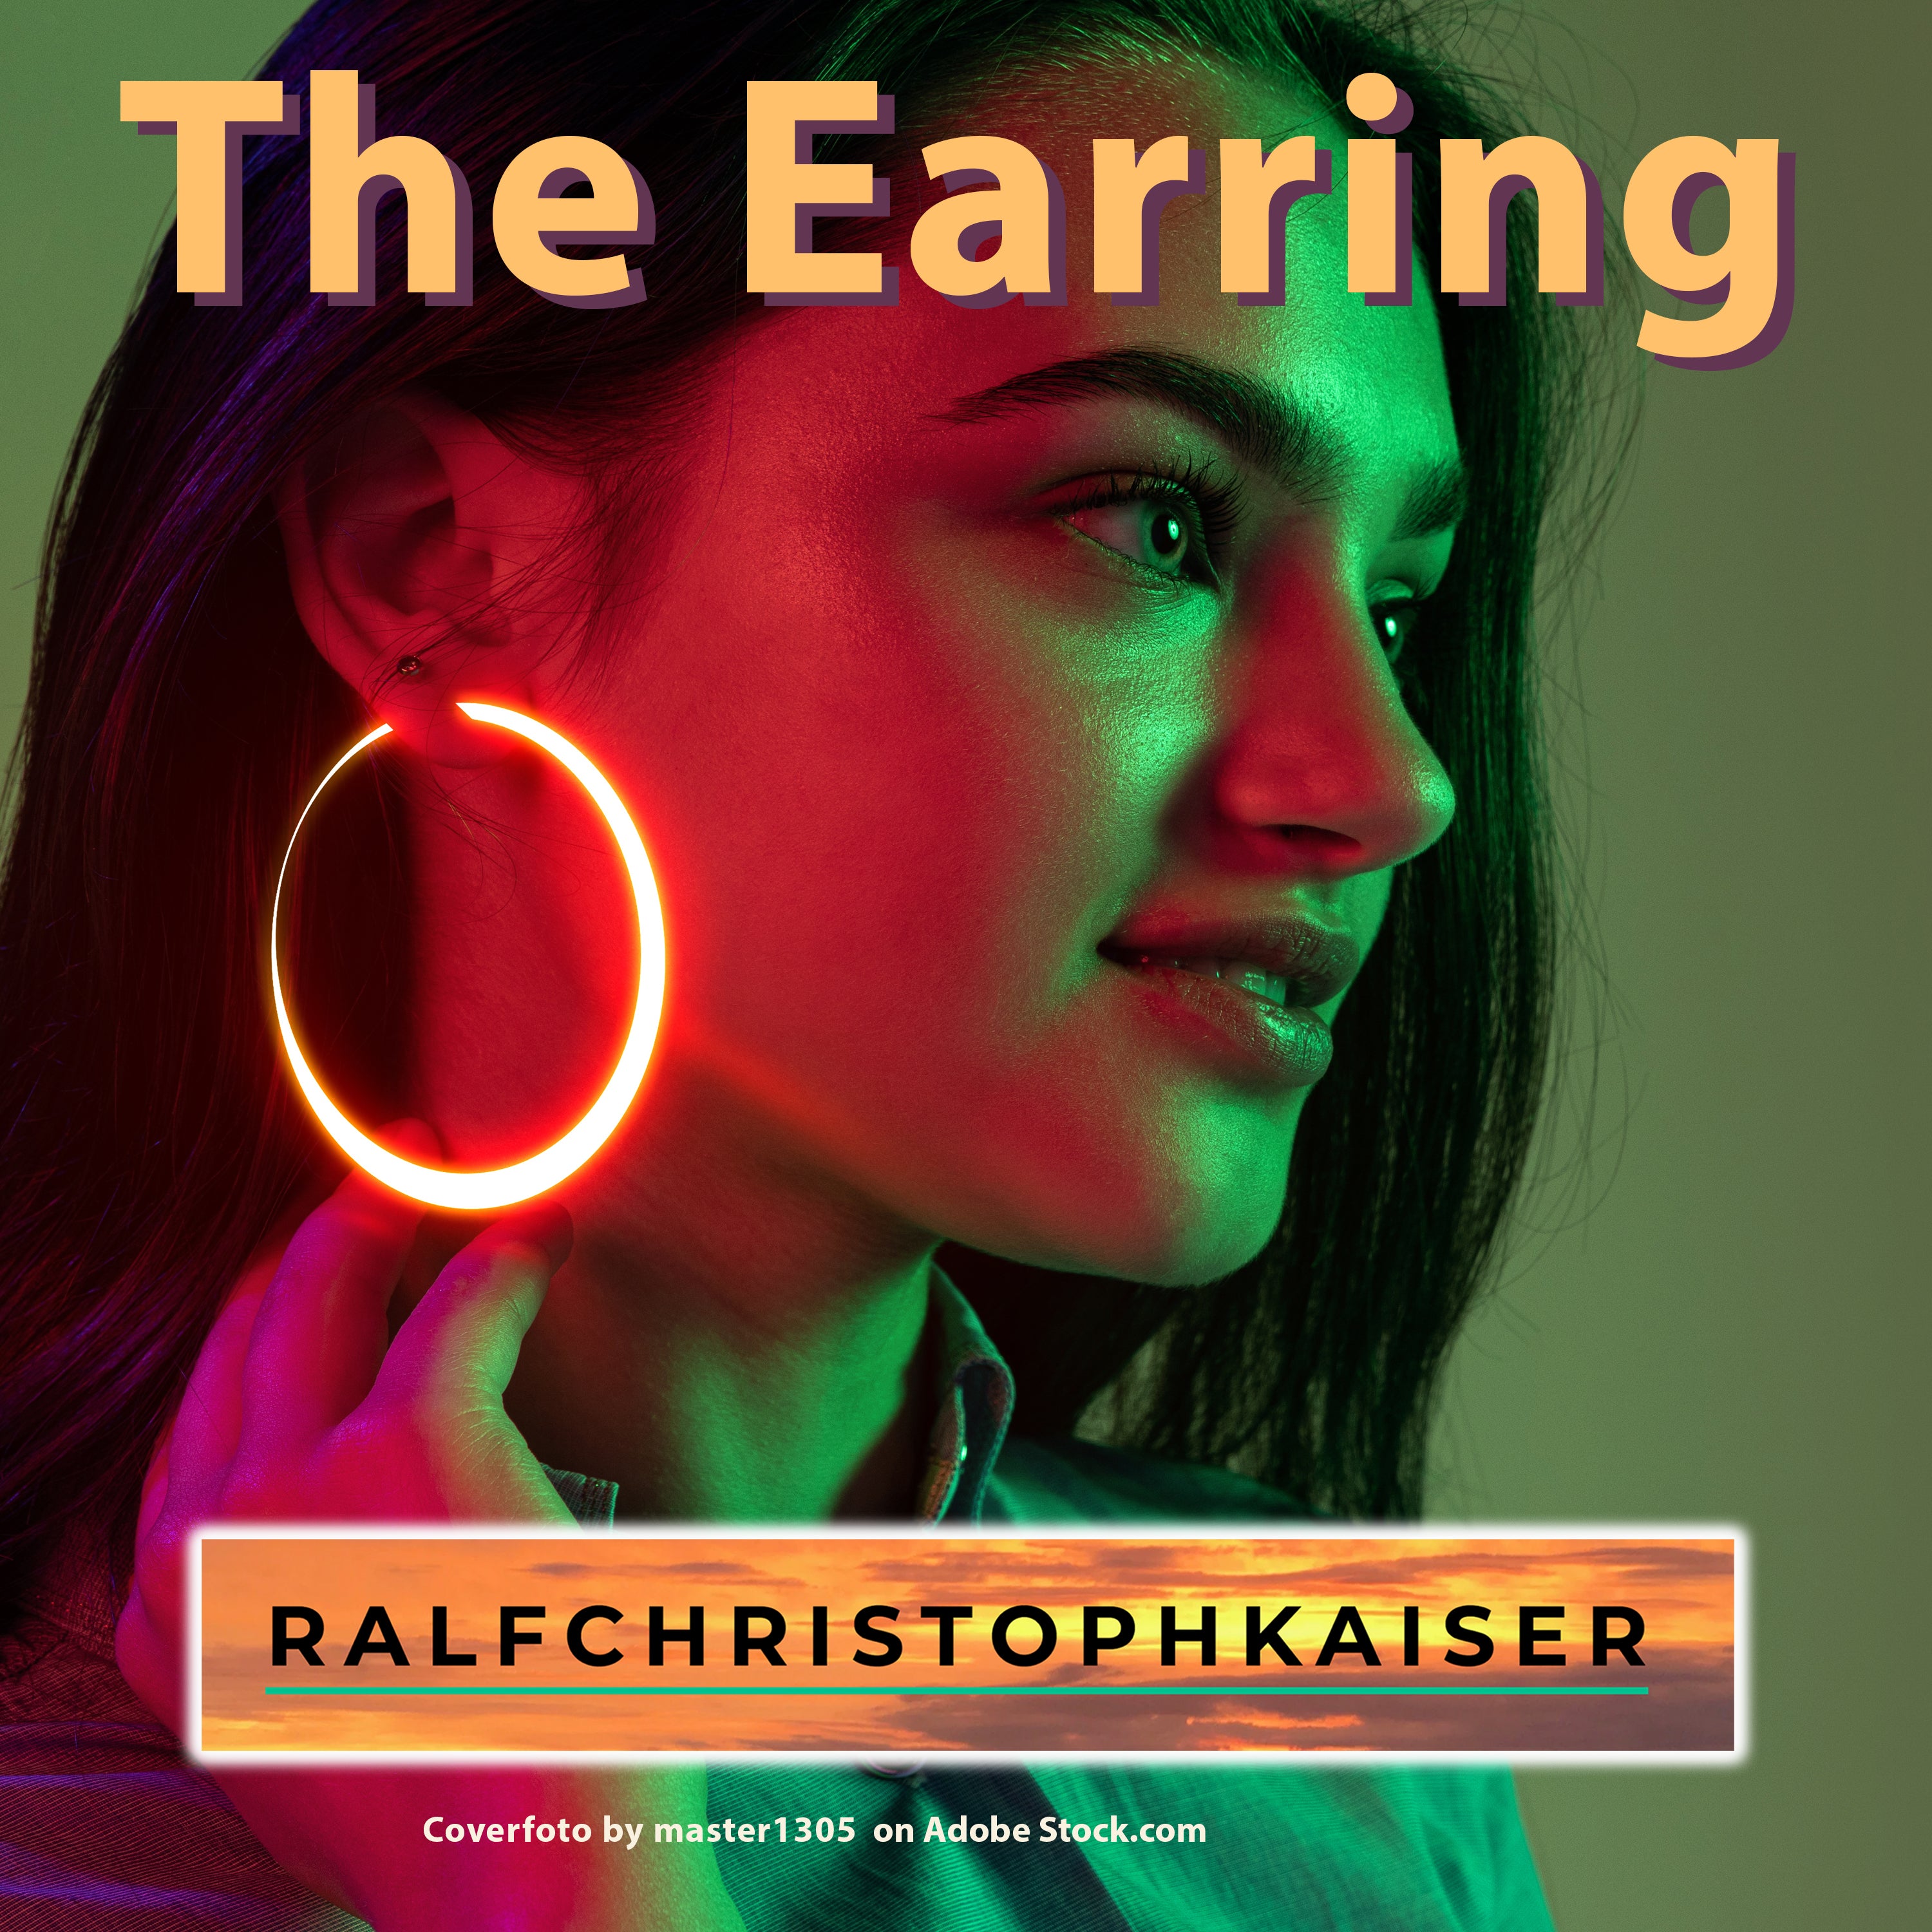 "The Earring", новая песня Ральфа Кристофа Кайзера, теперь в виде 32-битного wav-файла 48 кГц и в формате mp3 для загрузки здесь, в магазине, с текстом в формате PDF.